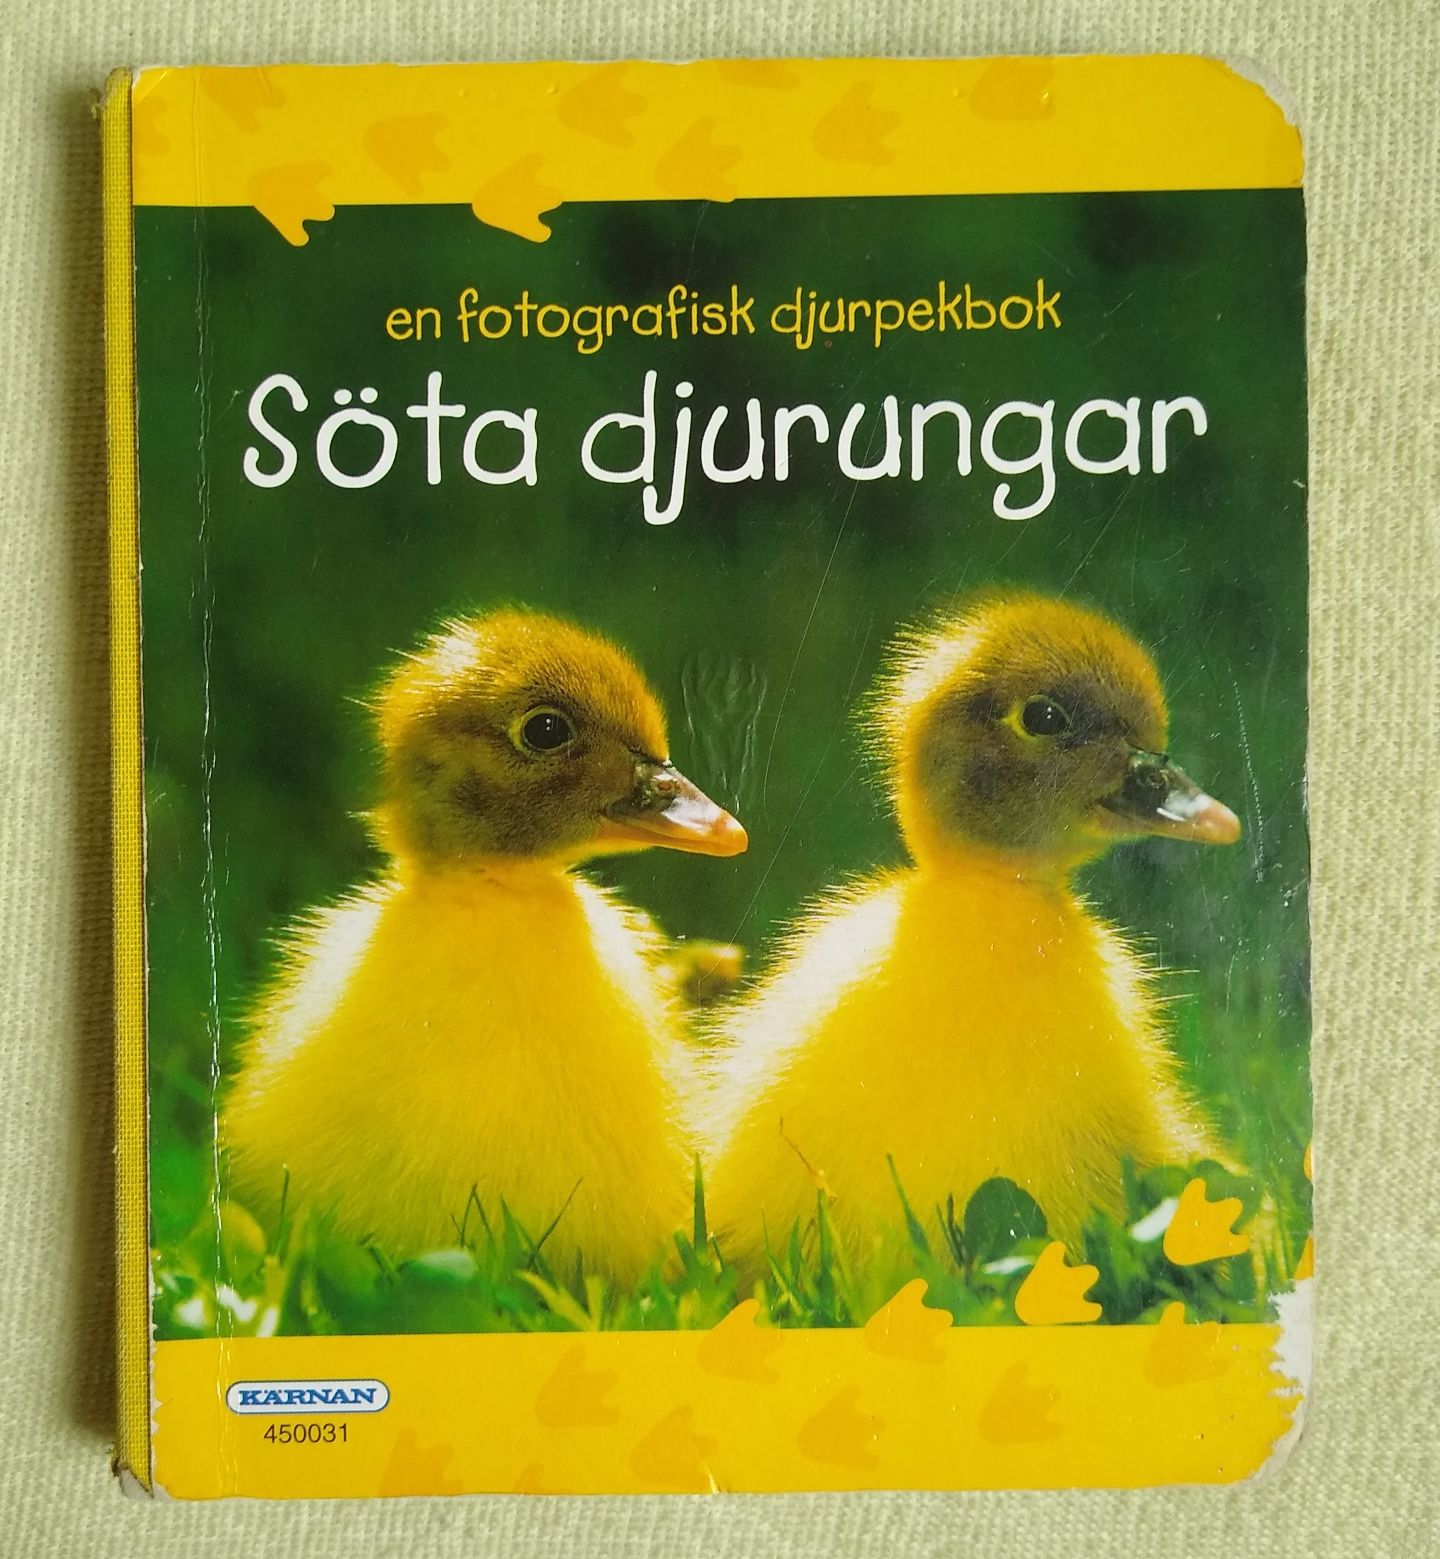 Książka dla dzieci sztywne kartki ze zdjęciami zwierząt